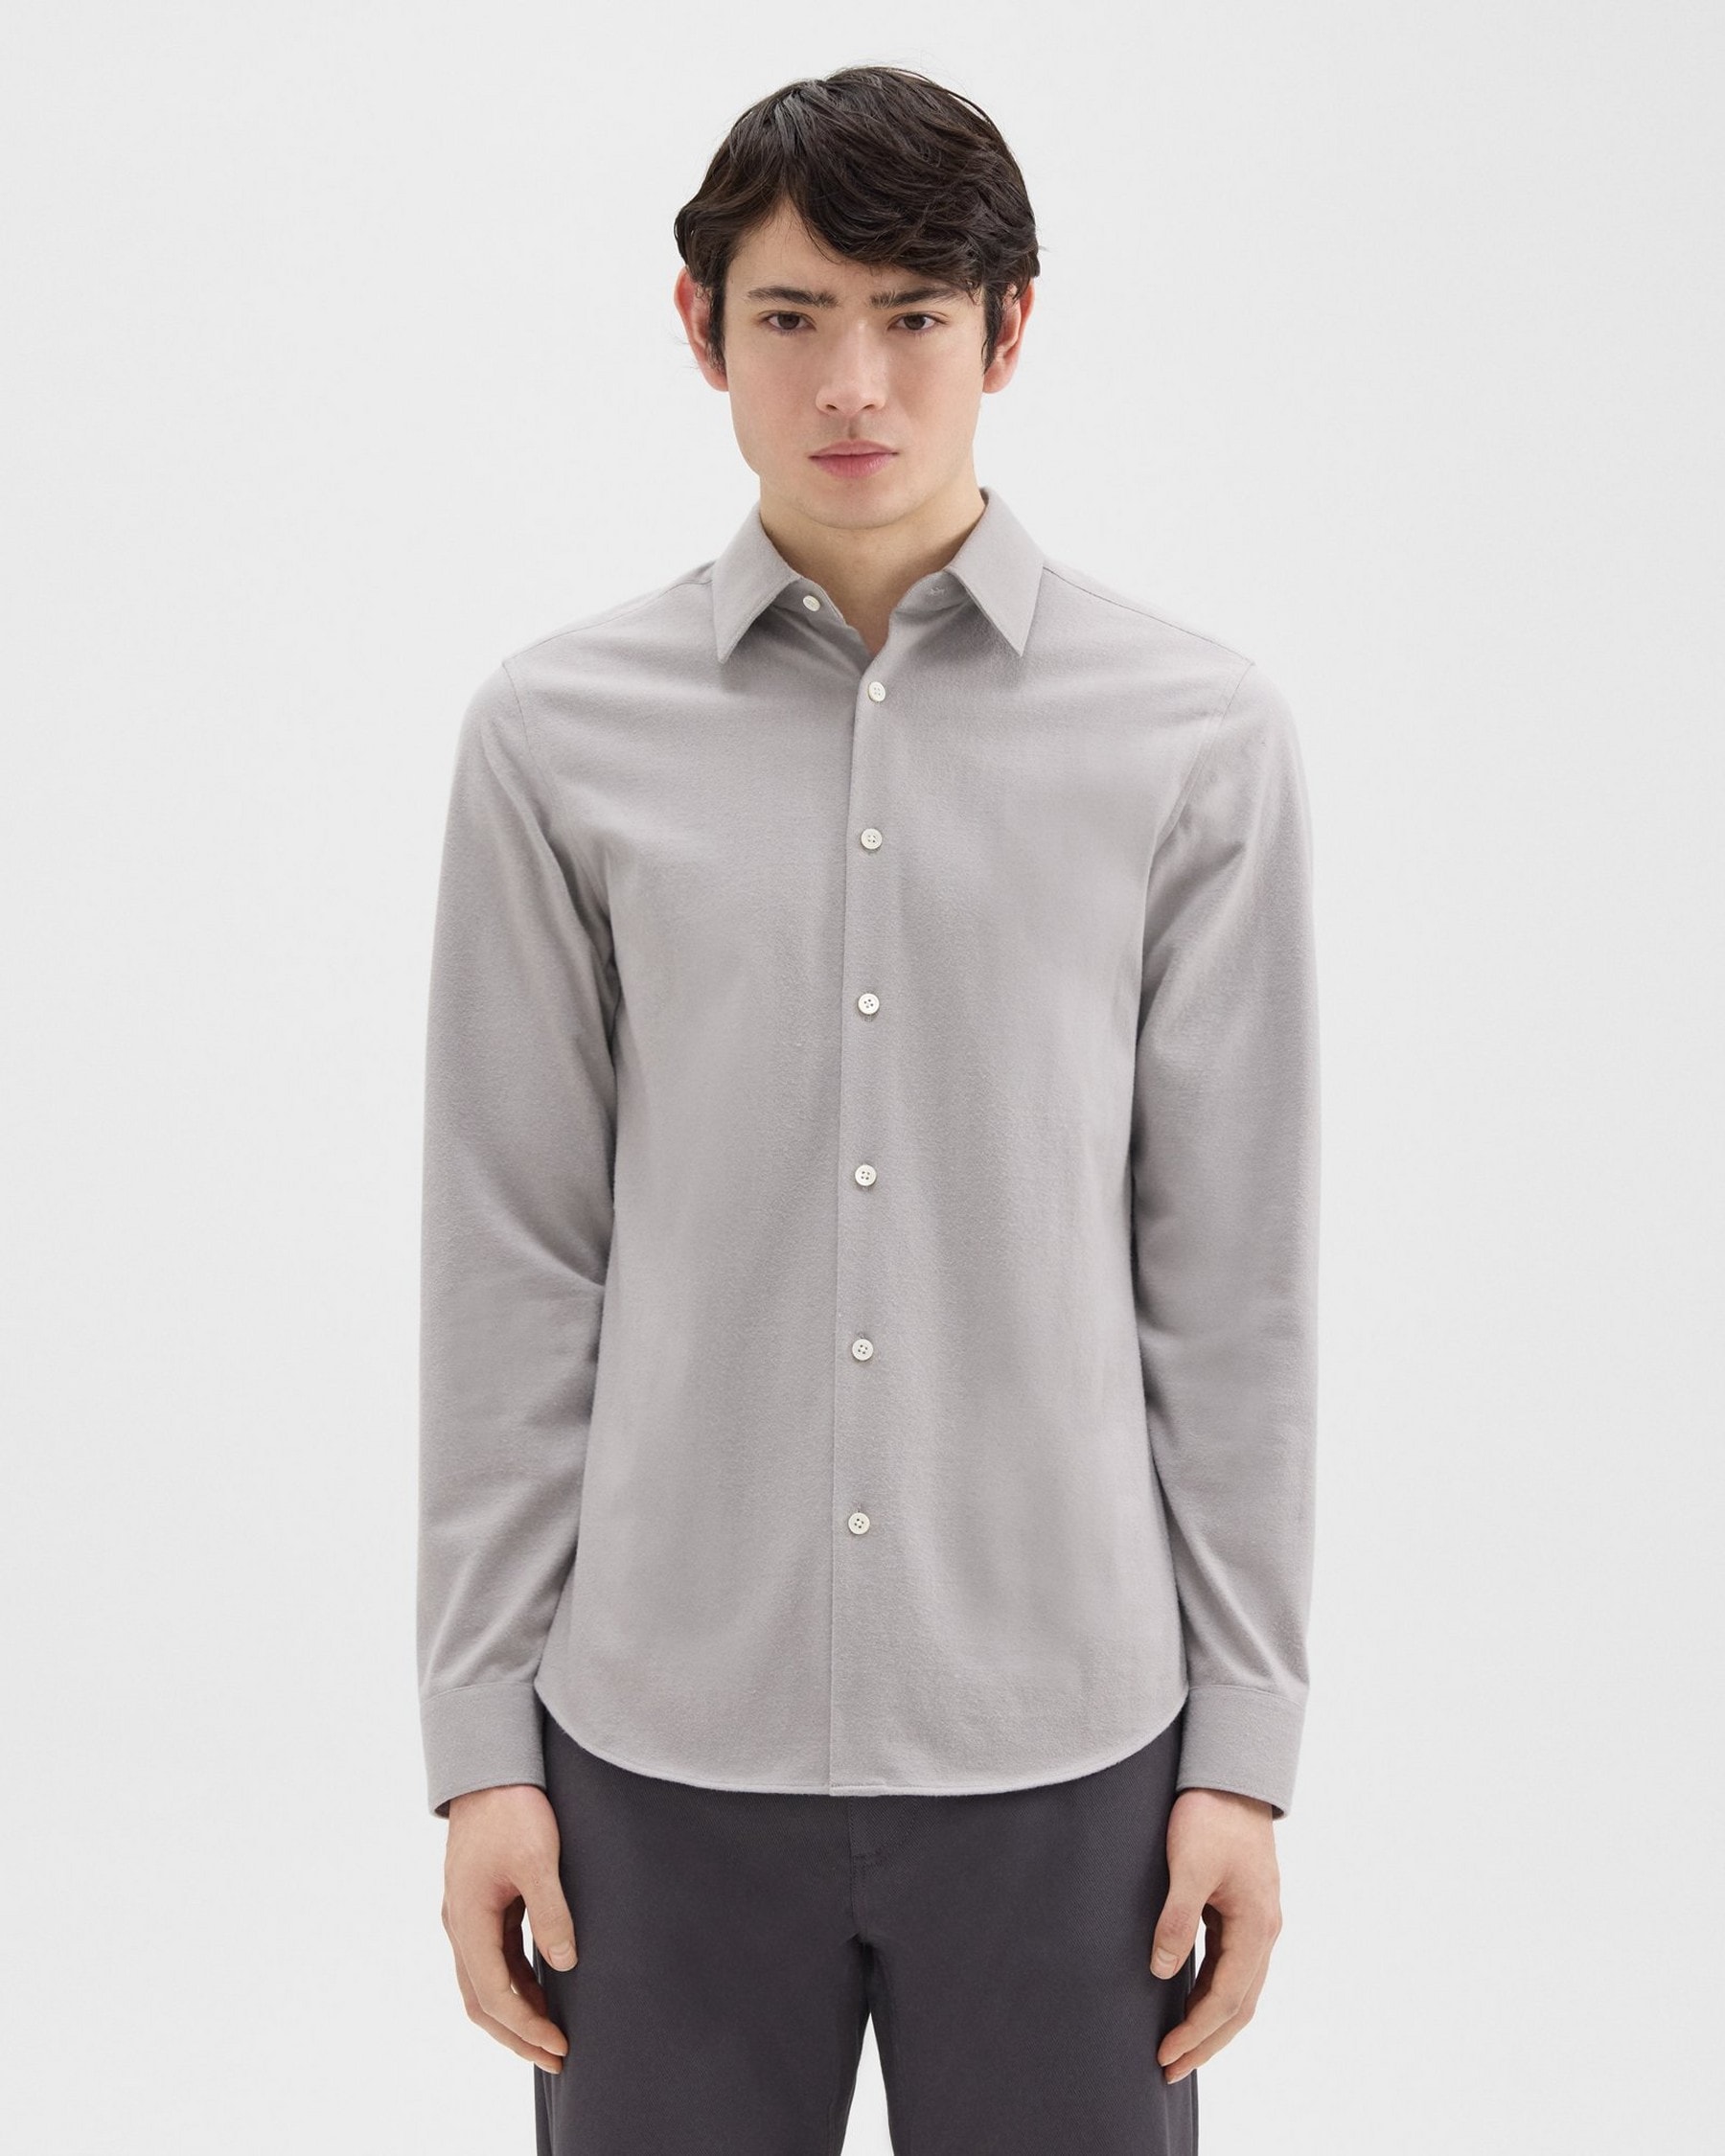 띠어리 Theory Irving Shirt in Cotton Flannel,LT GREY MELANGE